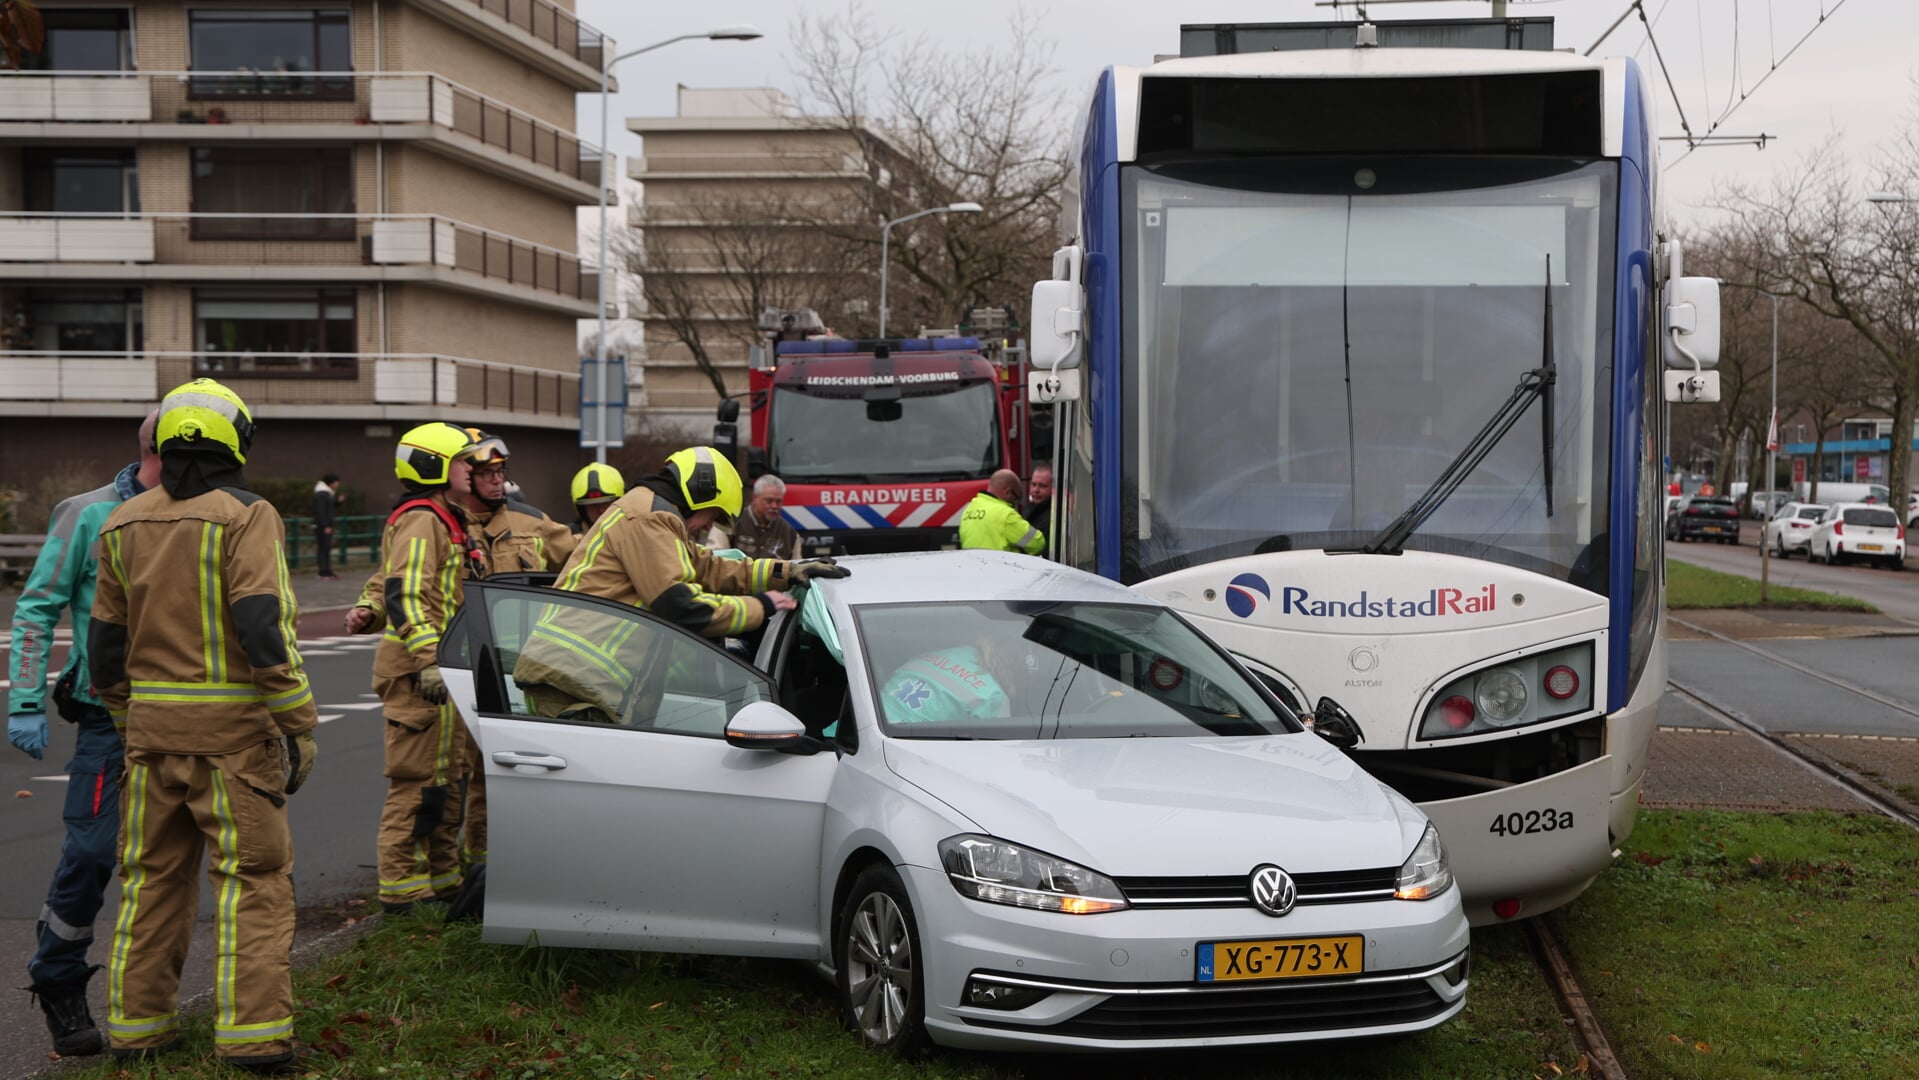 Brandweerlieden openden met een hydraulische spreider een portier, zodat de inzittende de auto uit kon (foto: Rene Hendriks).